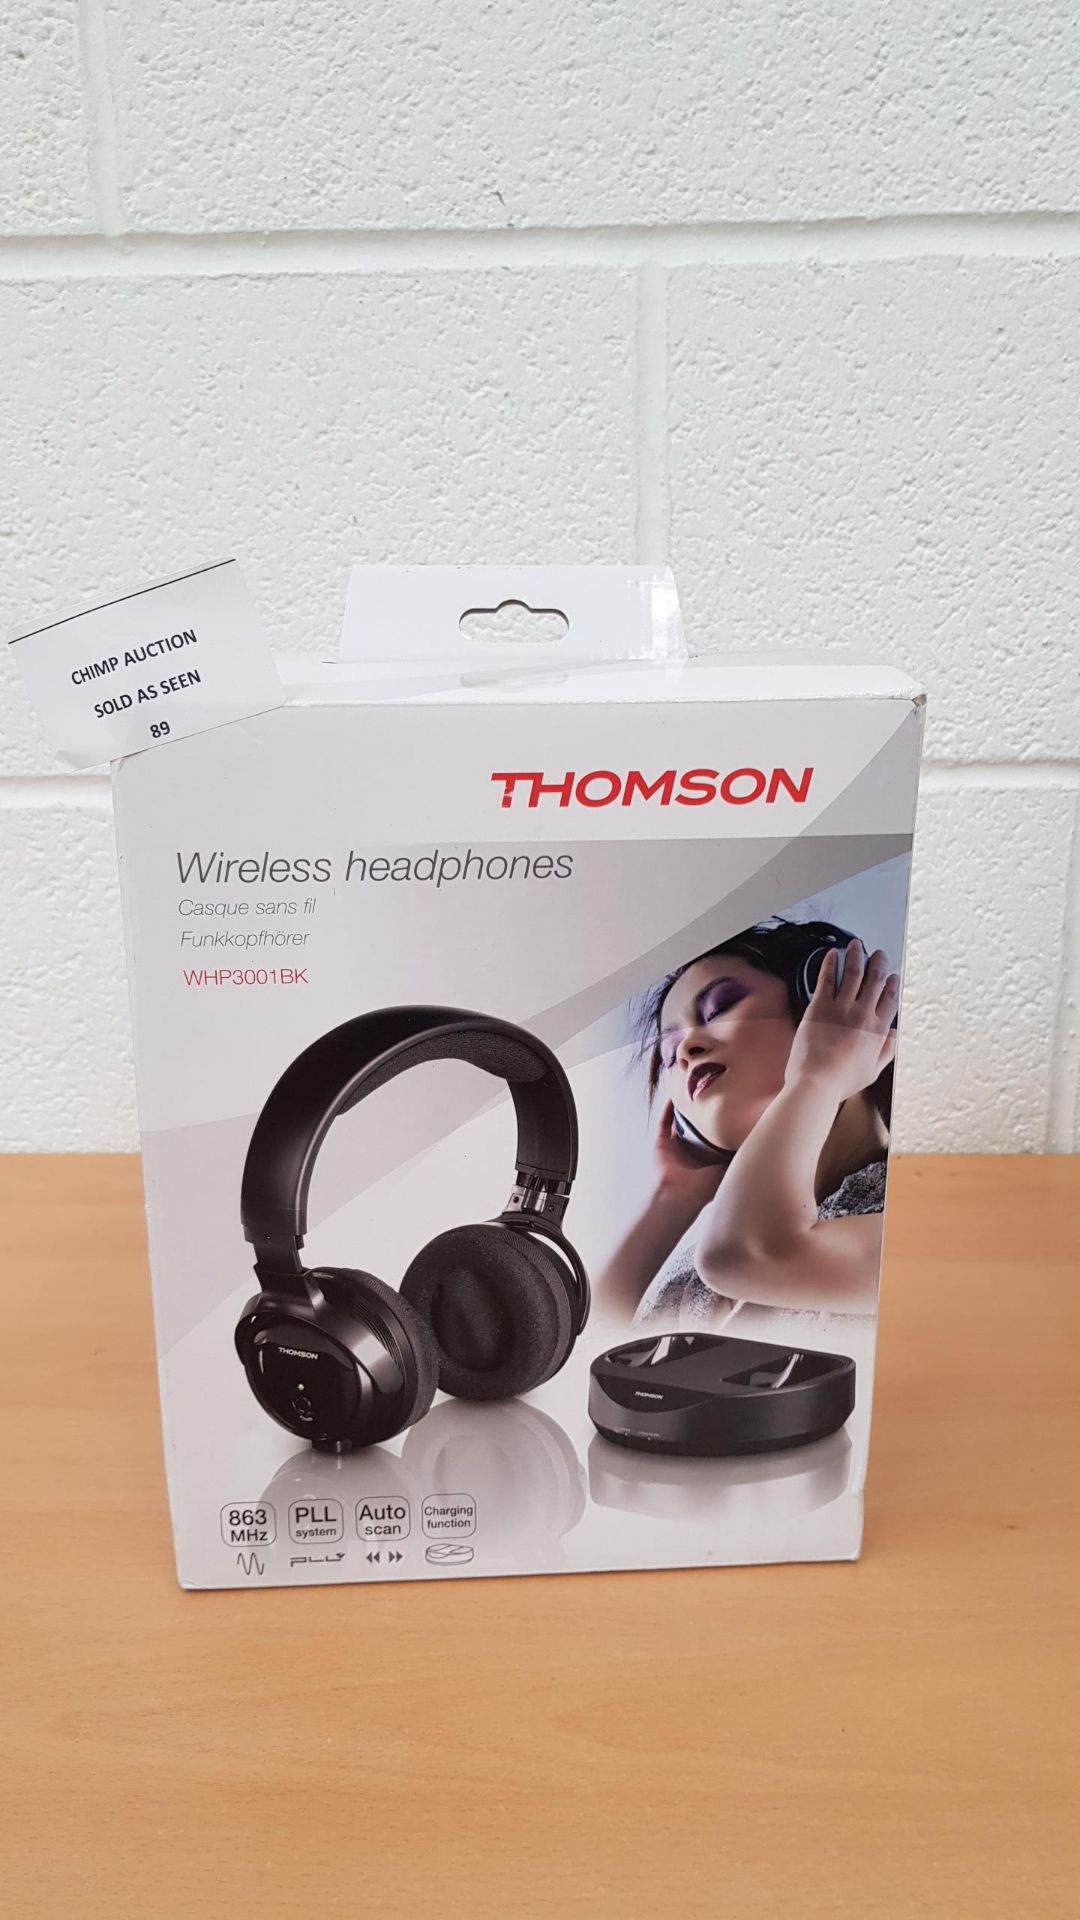 Thomson WHP3001BK Radio UHF Wireless Headphones RRP £69.99